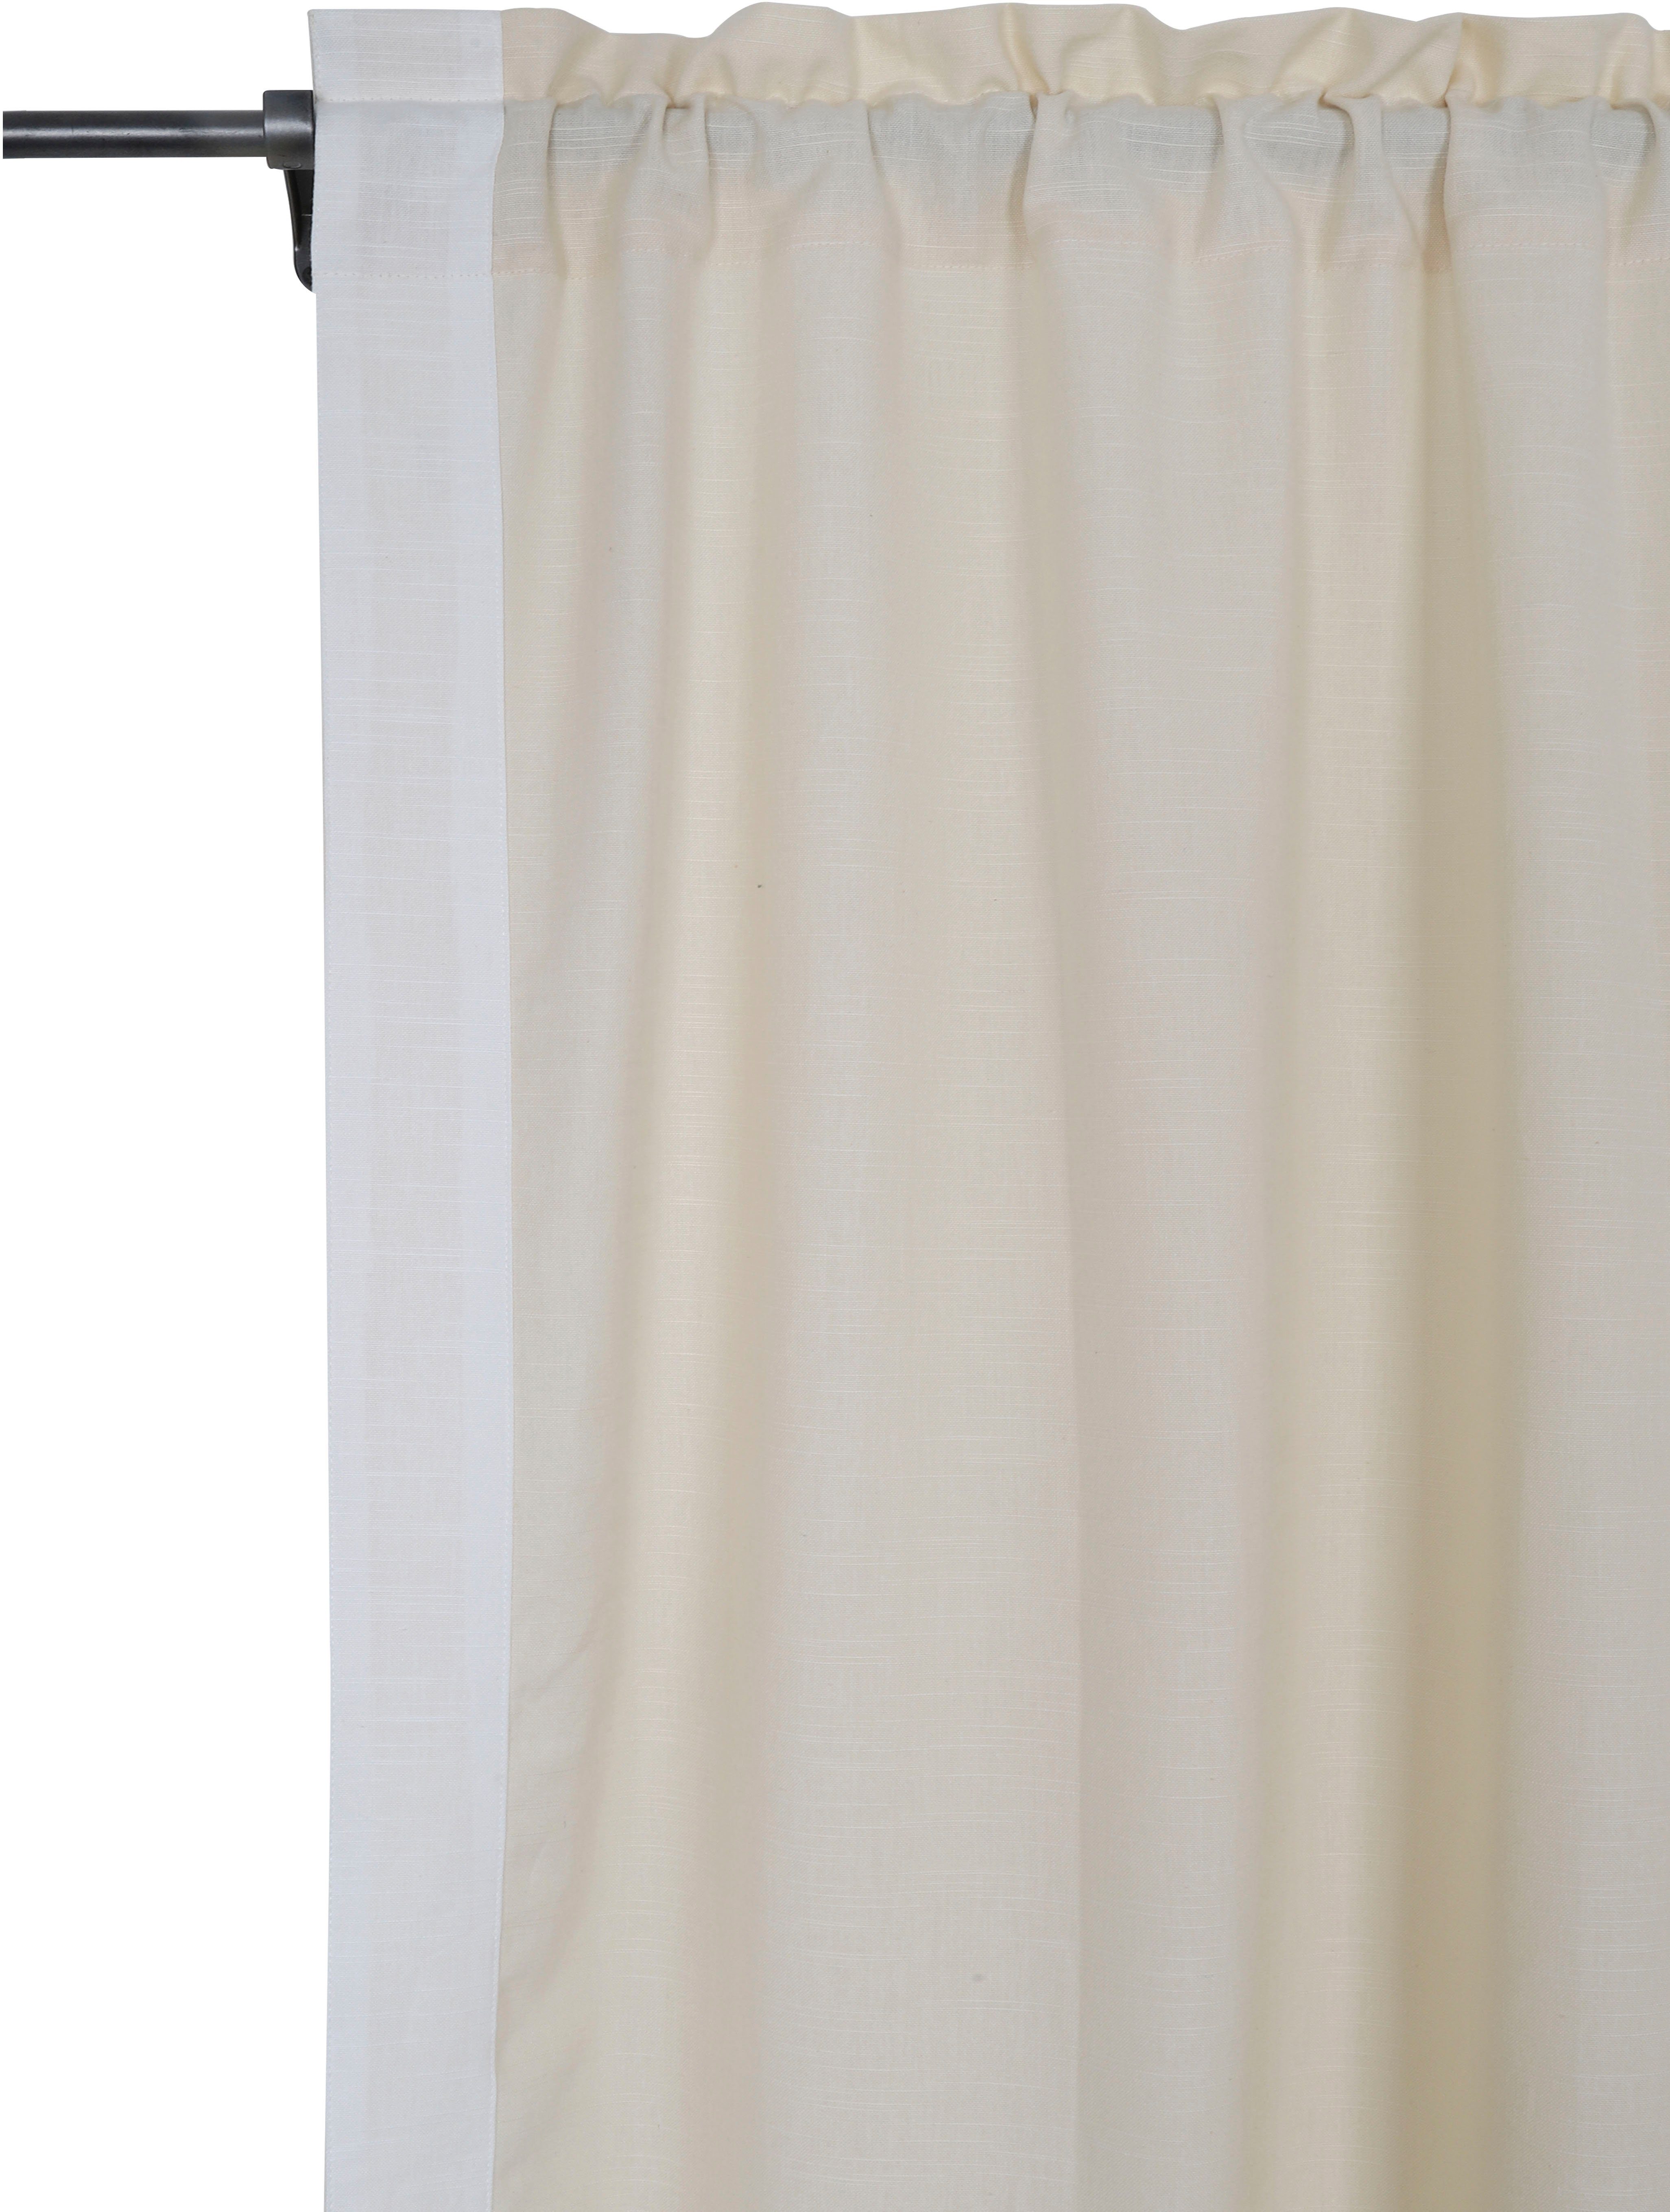 Vorhang Matias, andas, blickdicht, beige/weiß monochrom, verschiedene Stangendurchzug Größen blickdicht, (1 St)